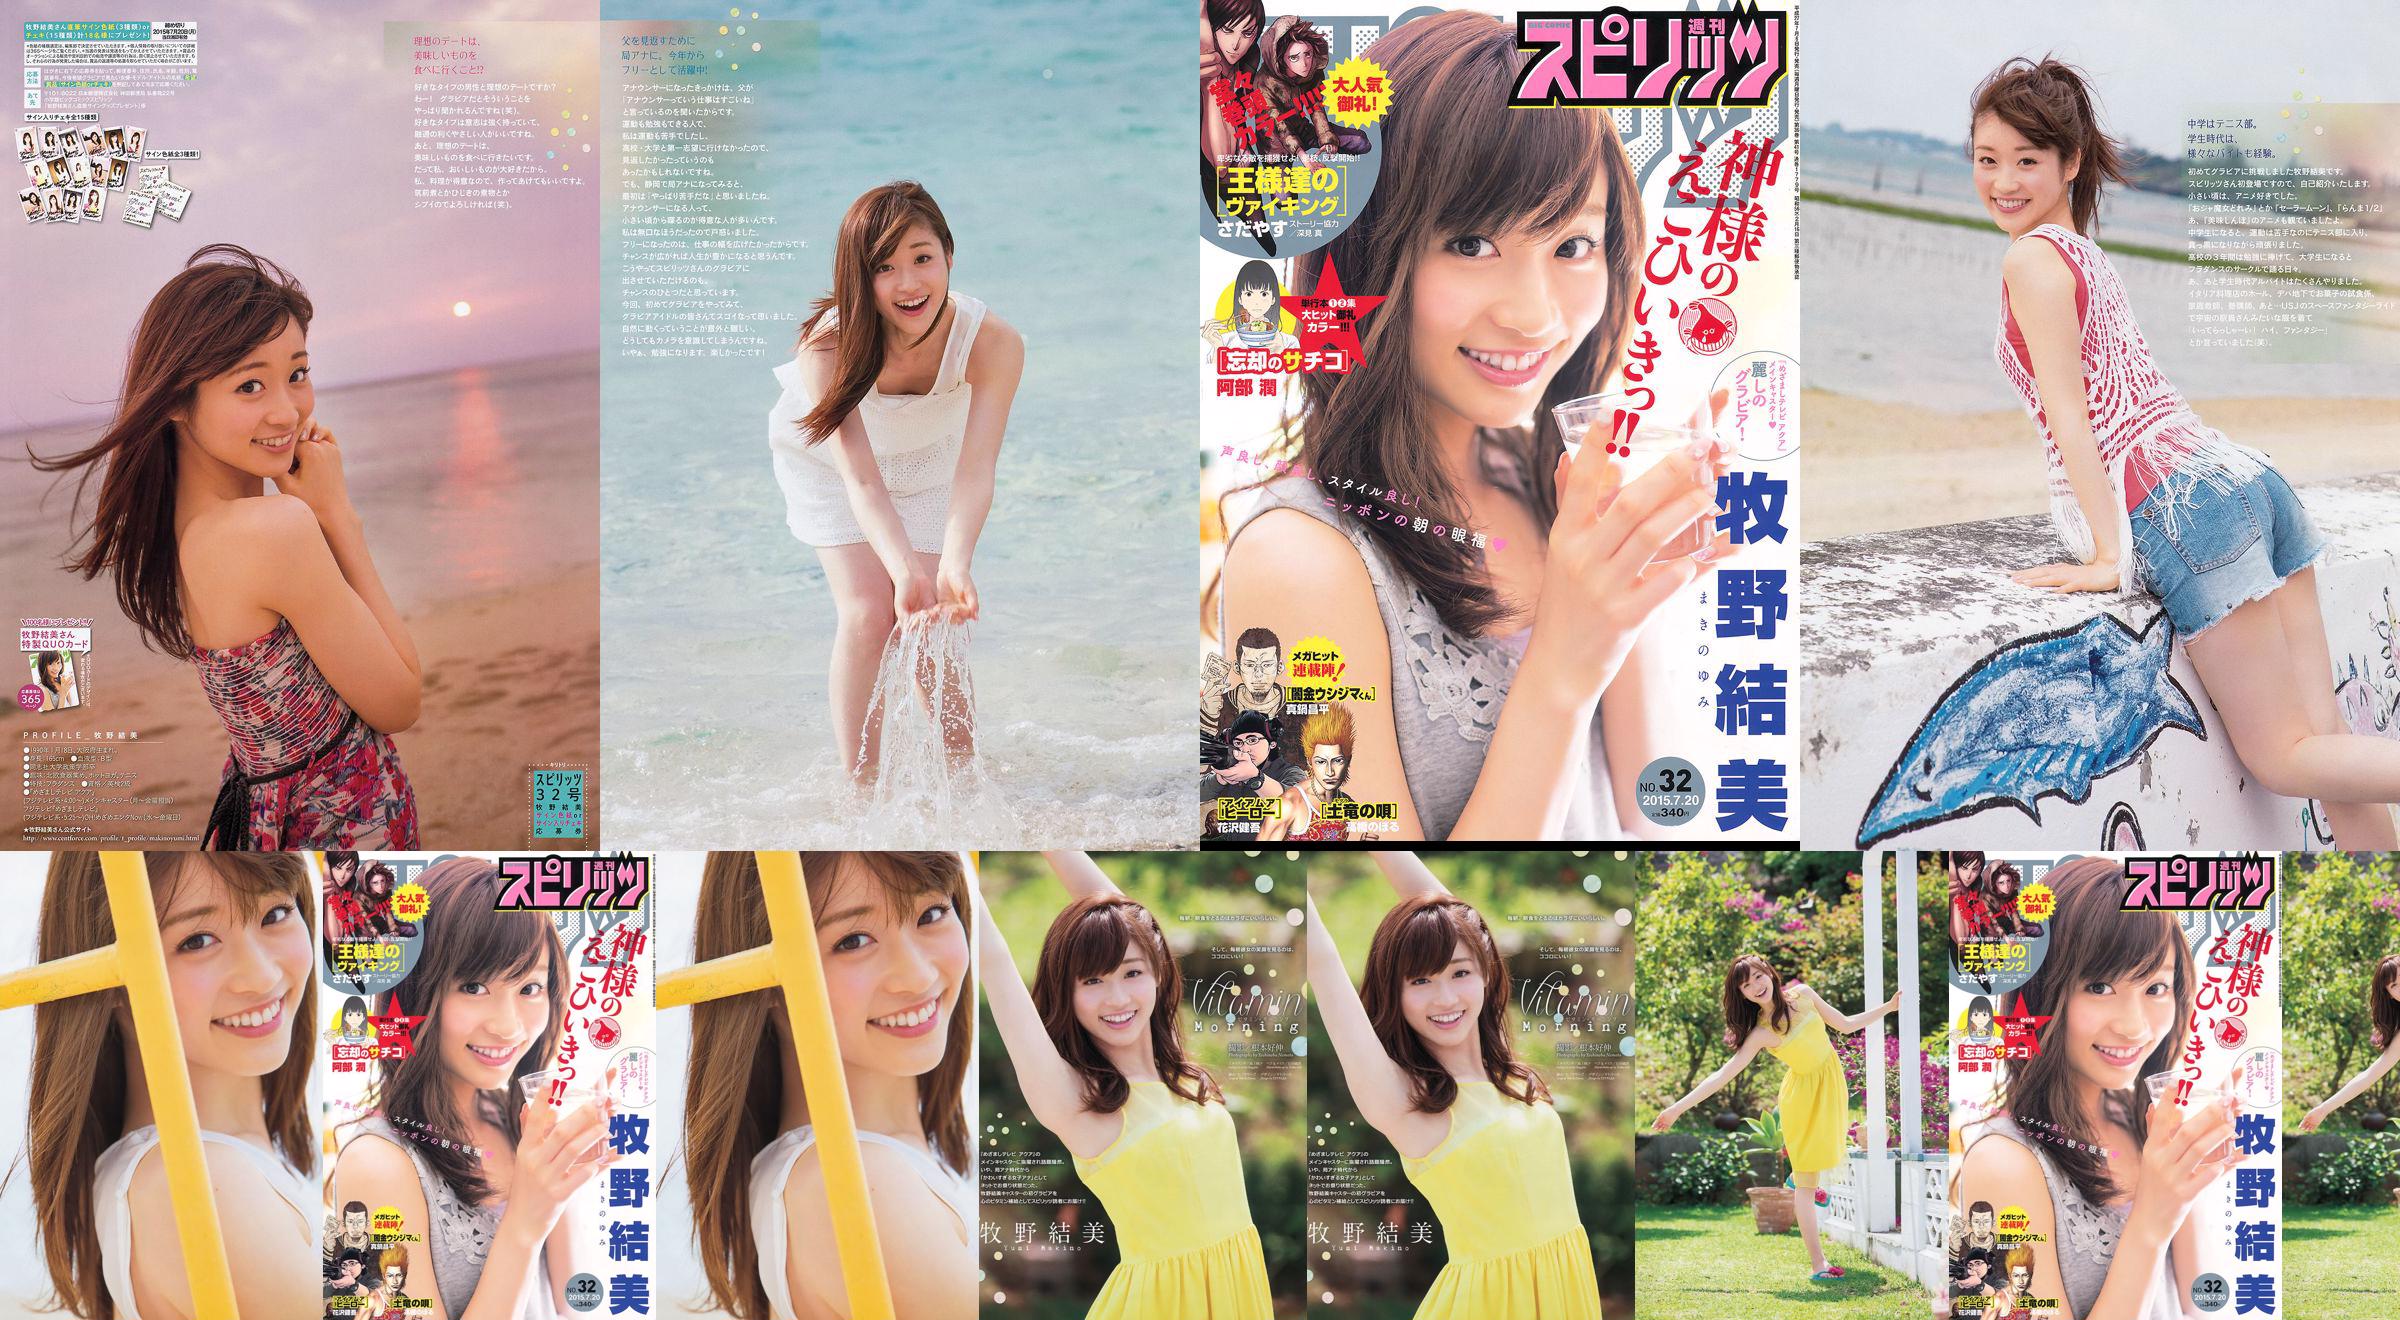 [Weekly Big Comic Spirits] Yumi Makino 2015 No.32 Photo Magazine No.c8cdc7 Page 1